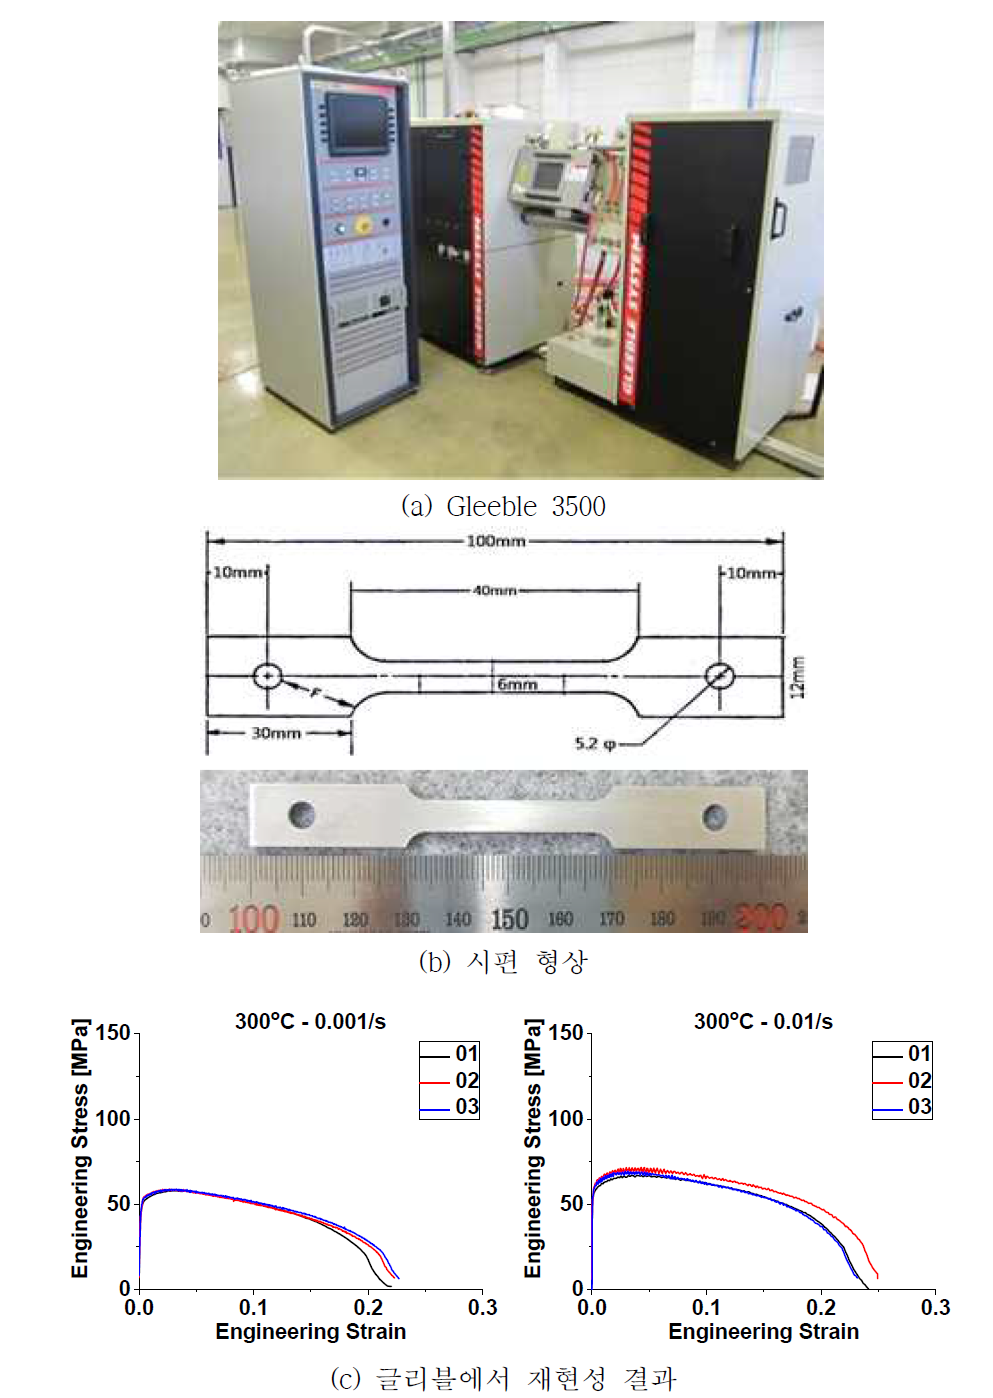 알루미늄 핫스템핑 공정의 온도이력 및 글리블 시험 온도 이력 설정